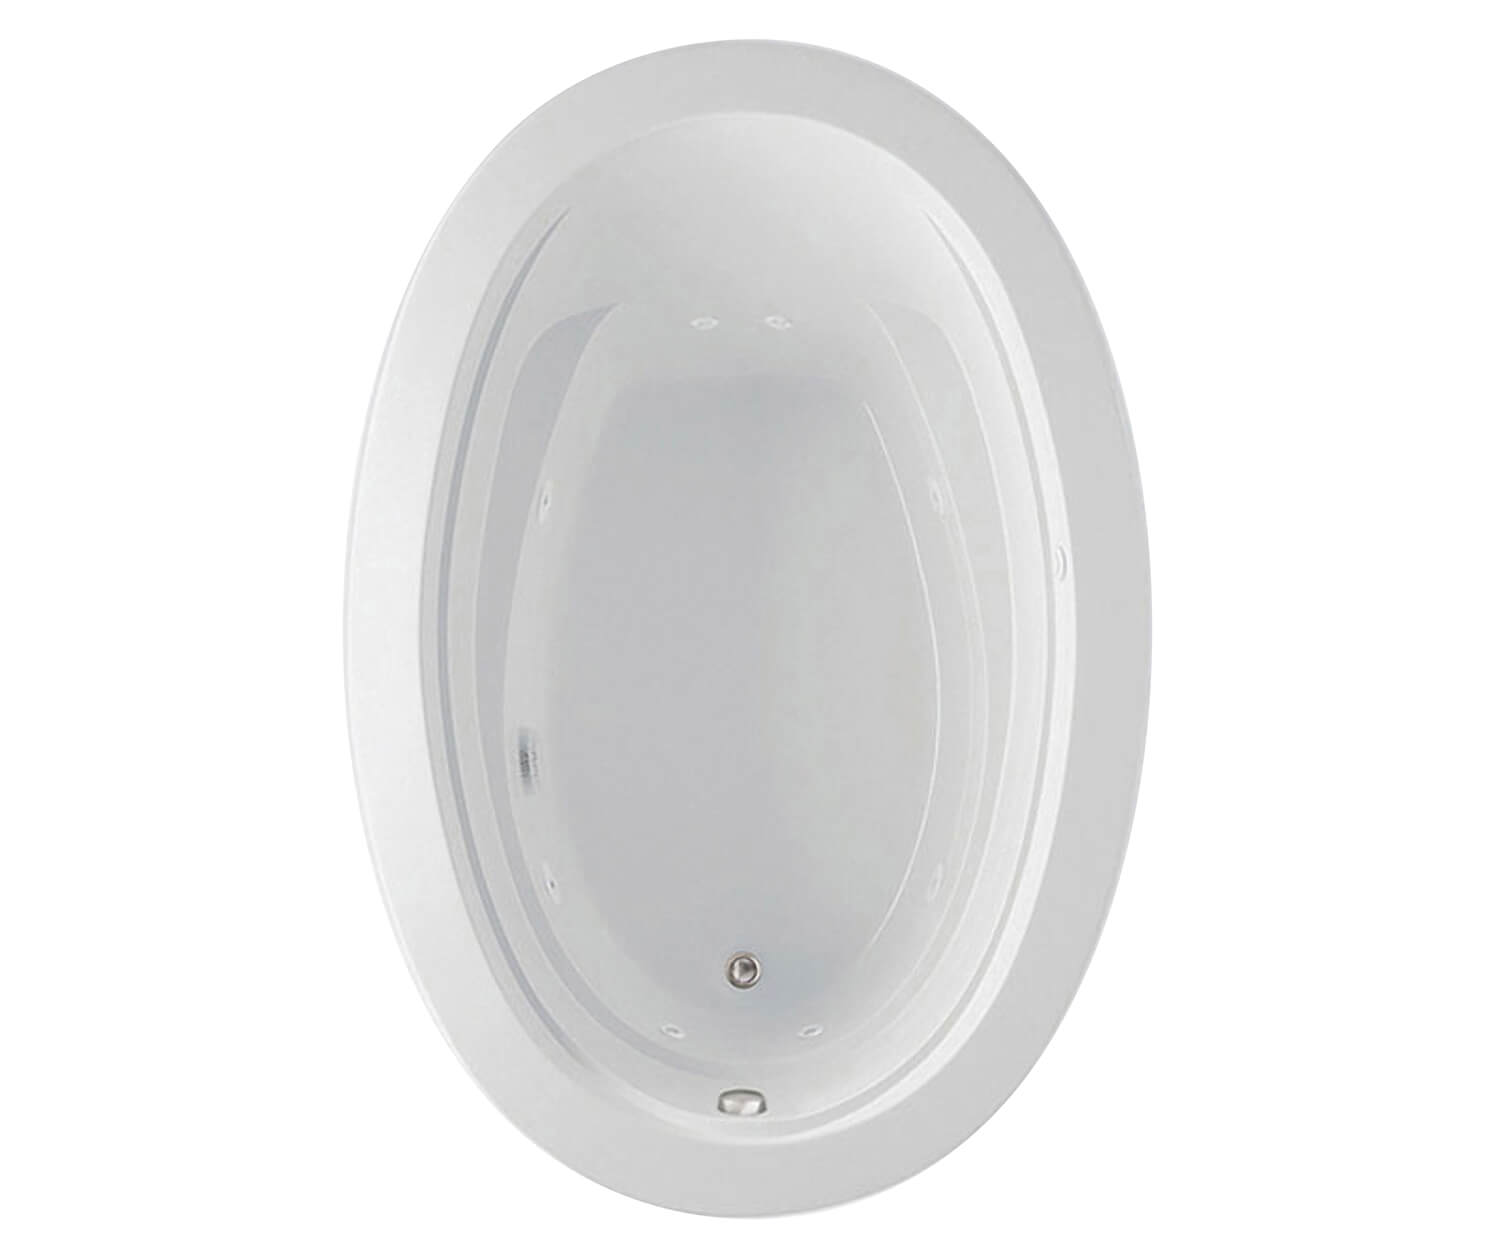 Arno 6040 Acrylic Drop-in End Drain Bathtub in White | Bath, Maax en